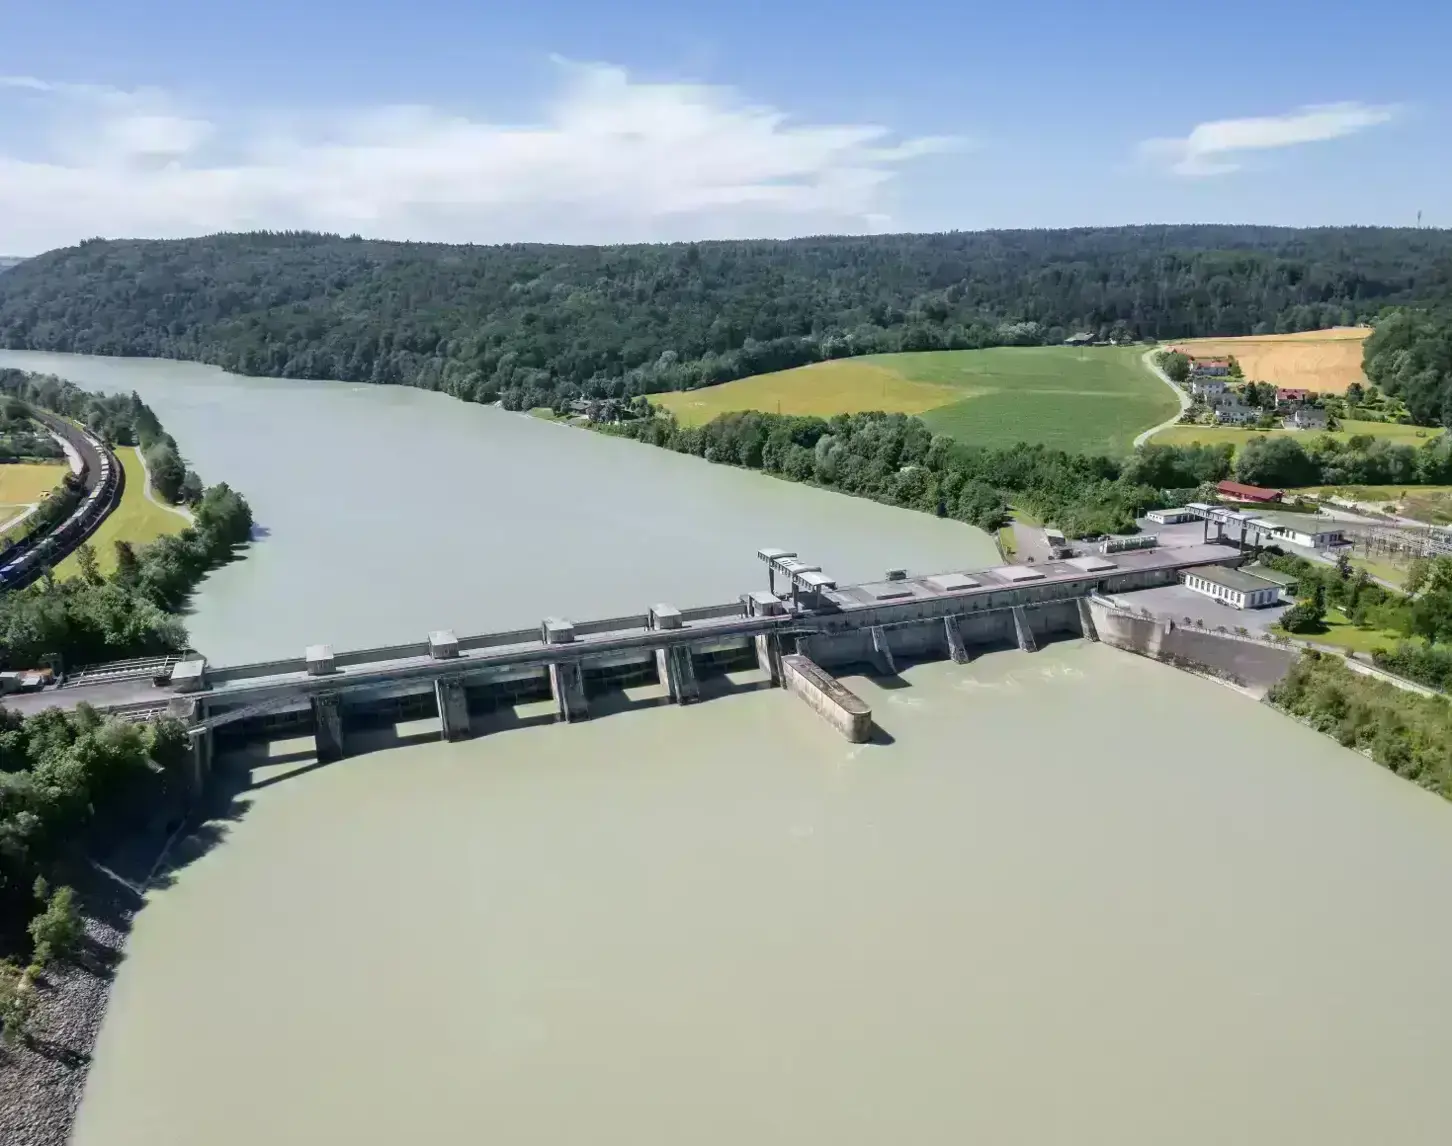 Das Bild zeigt eine Luftaufnahme des Kraftwerks Passau-Inglings von der Seite flussabwärts. Der Inn ist dabei blaugrün und hebt sich dadurch stark von den hell- und dunkelgrünen Wiesen und Wädern links und rechts des Flusses ab. Im Hintergrund sieht man noch den Verlauf des Inns, dahinter Wald sowie blauen Himmel.